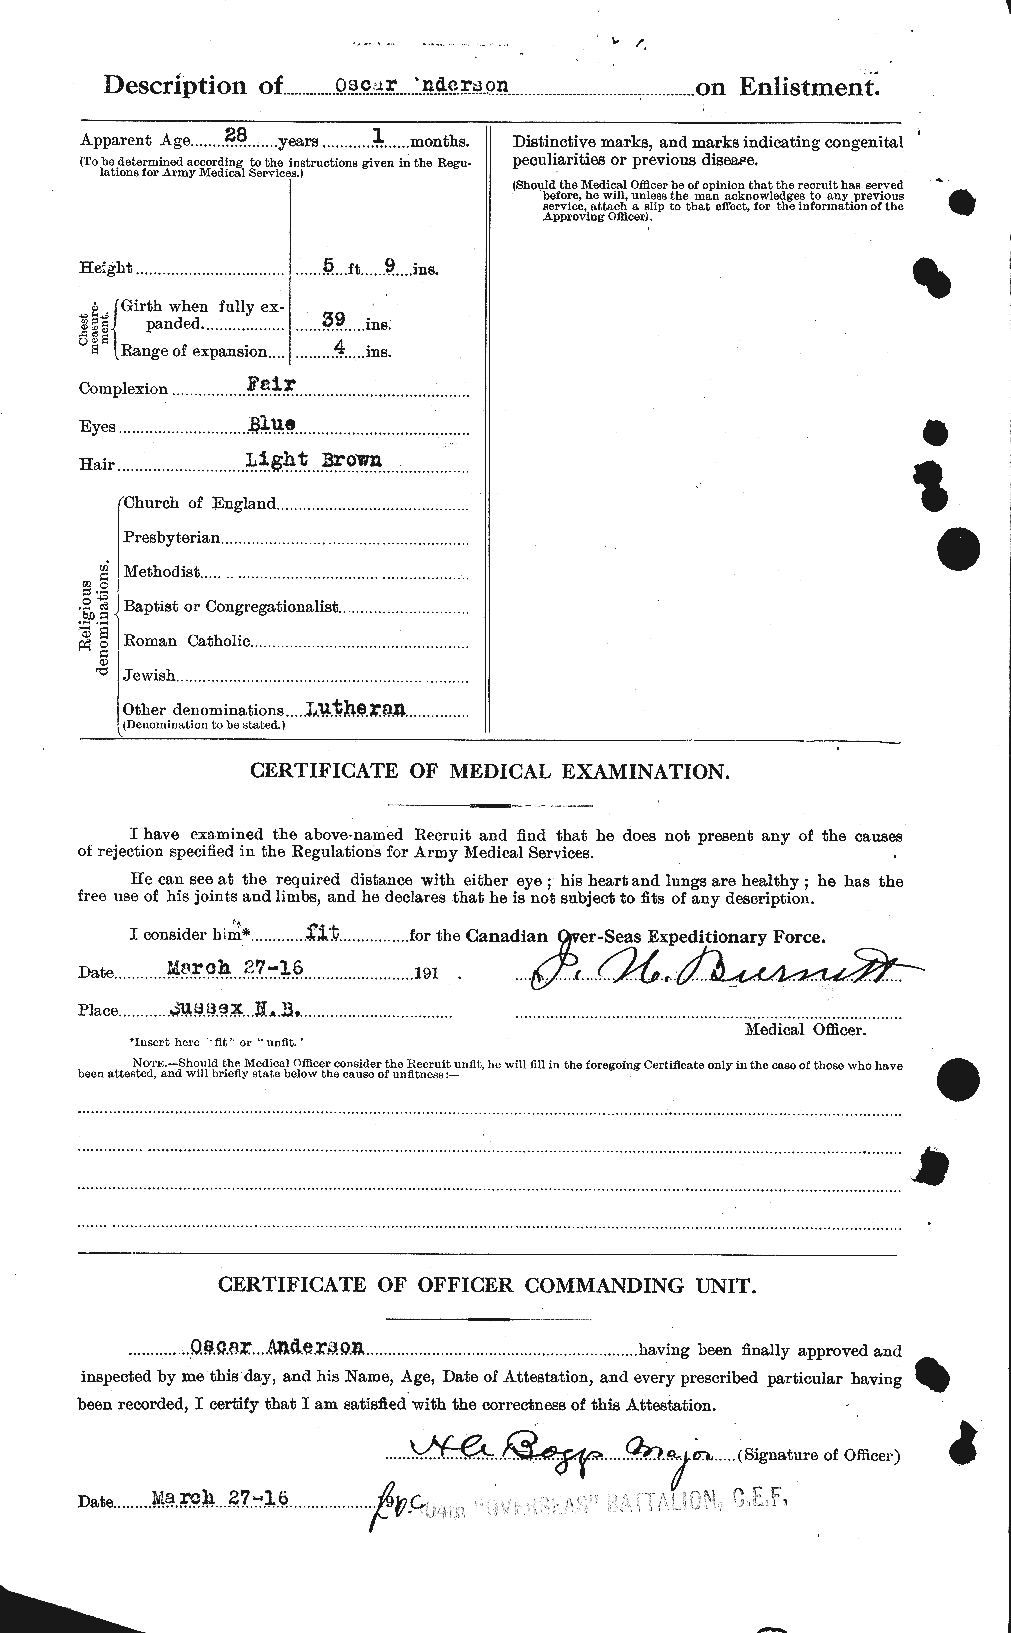 Dossiers du Personnel de la Première Guerre mondiale - CEC 207387b